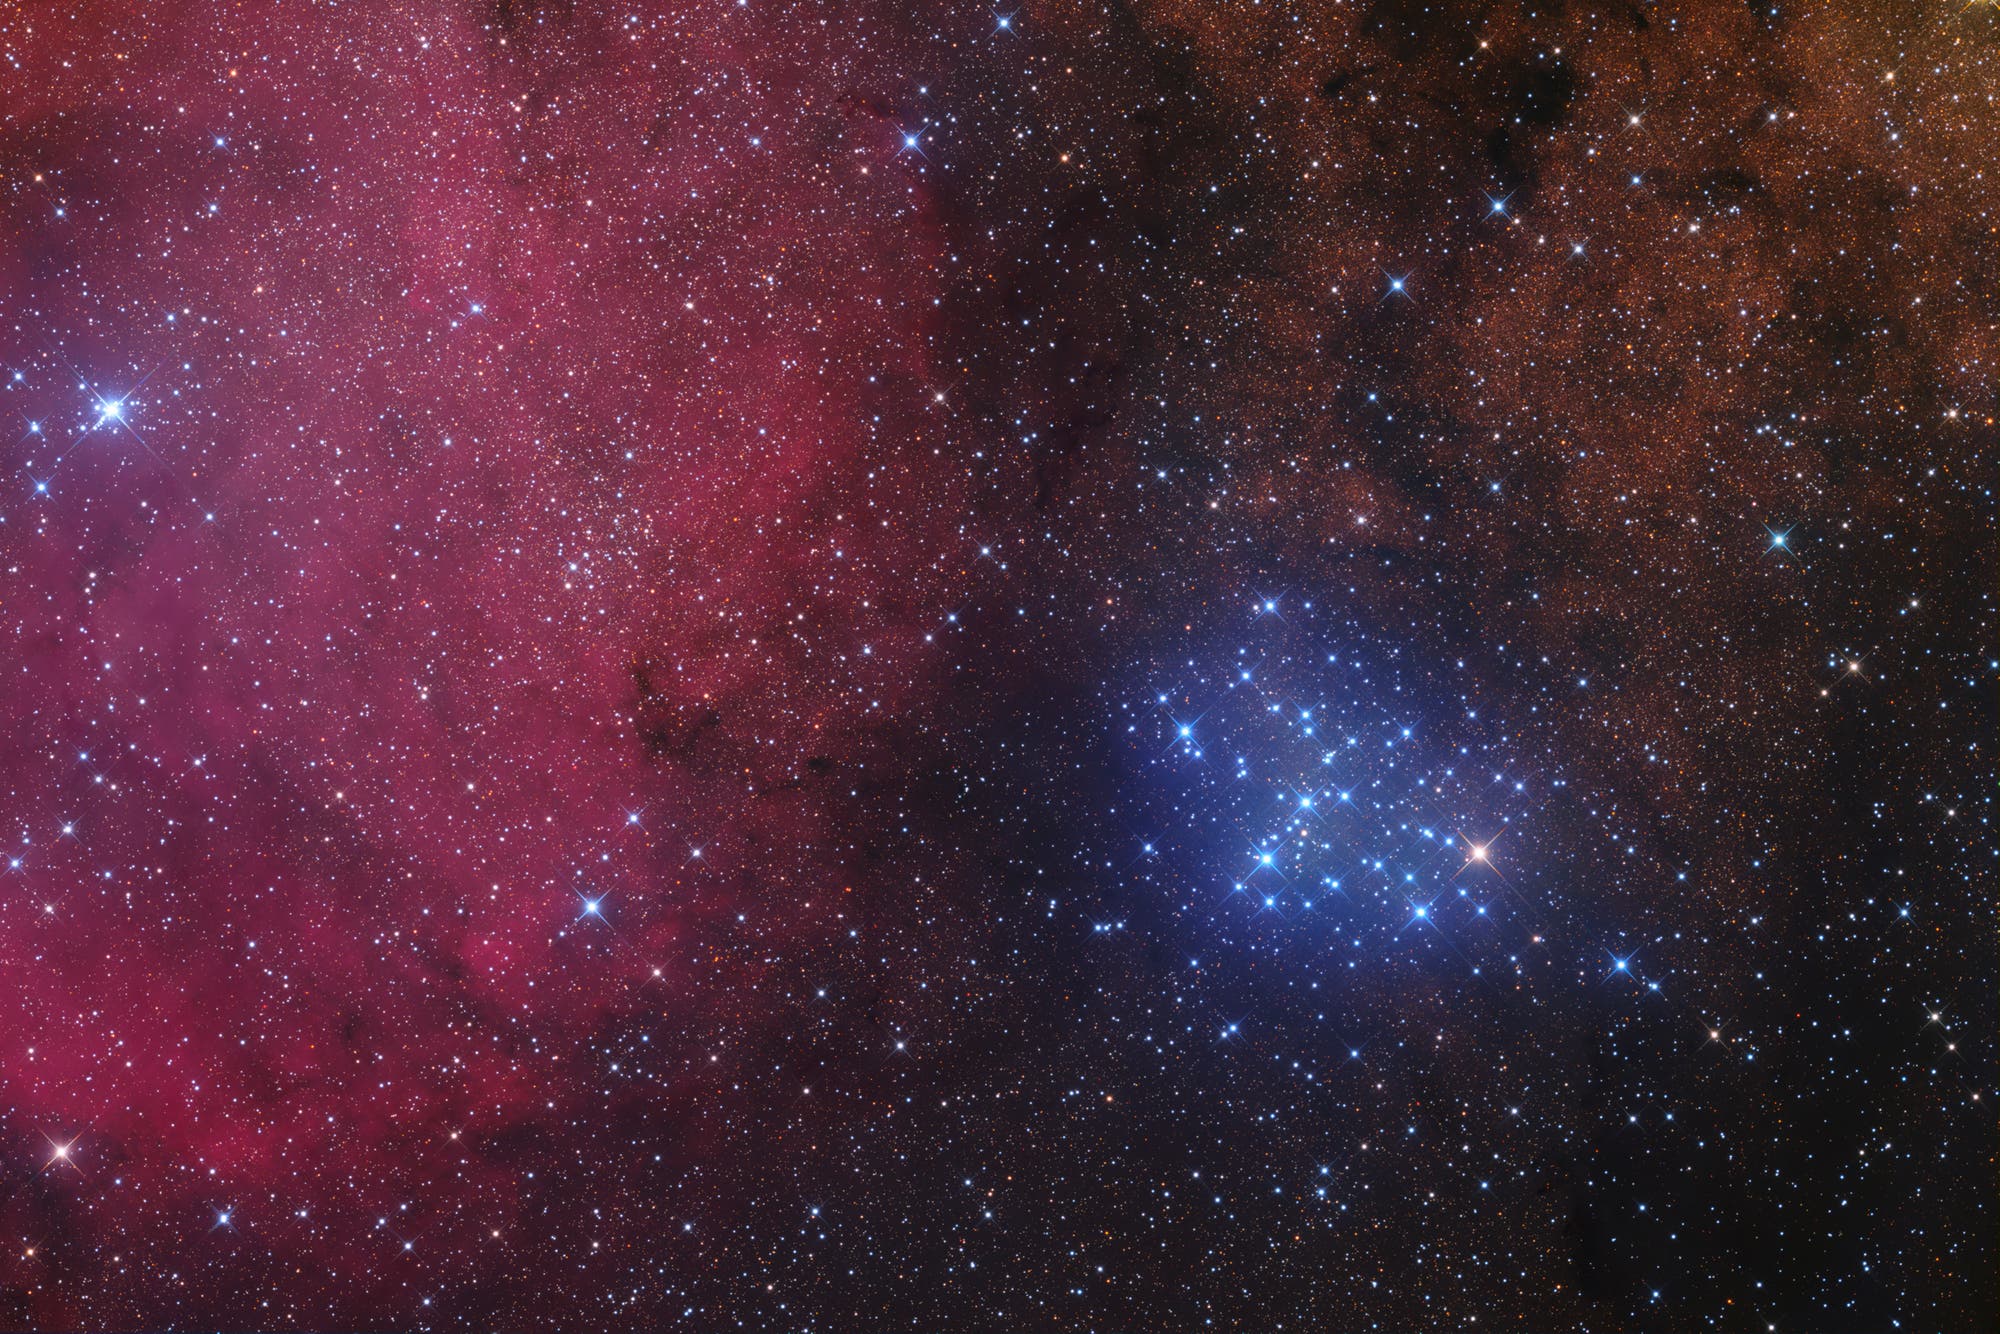 Messier 6: offener Sternhaufen im Sternbild Skorpion